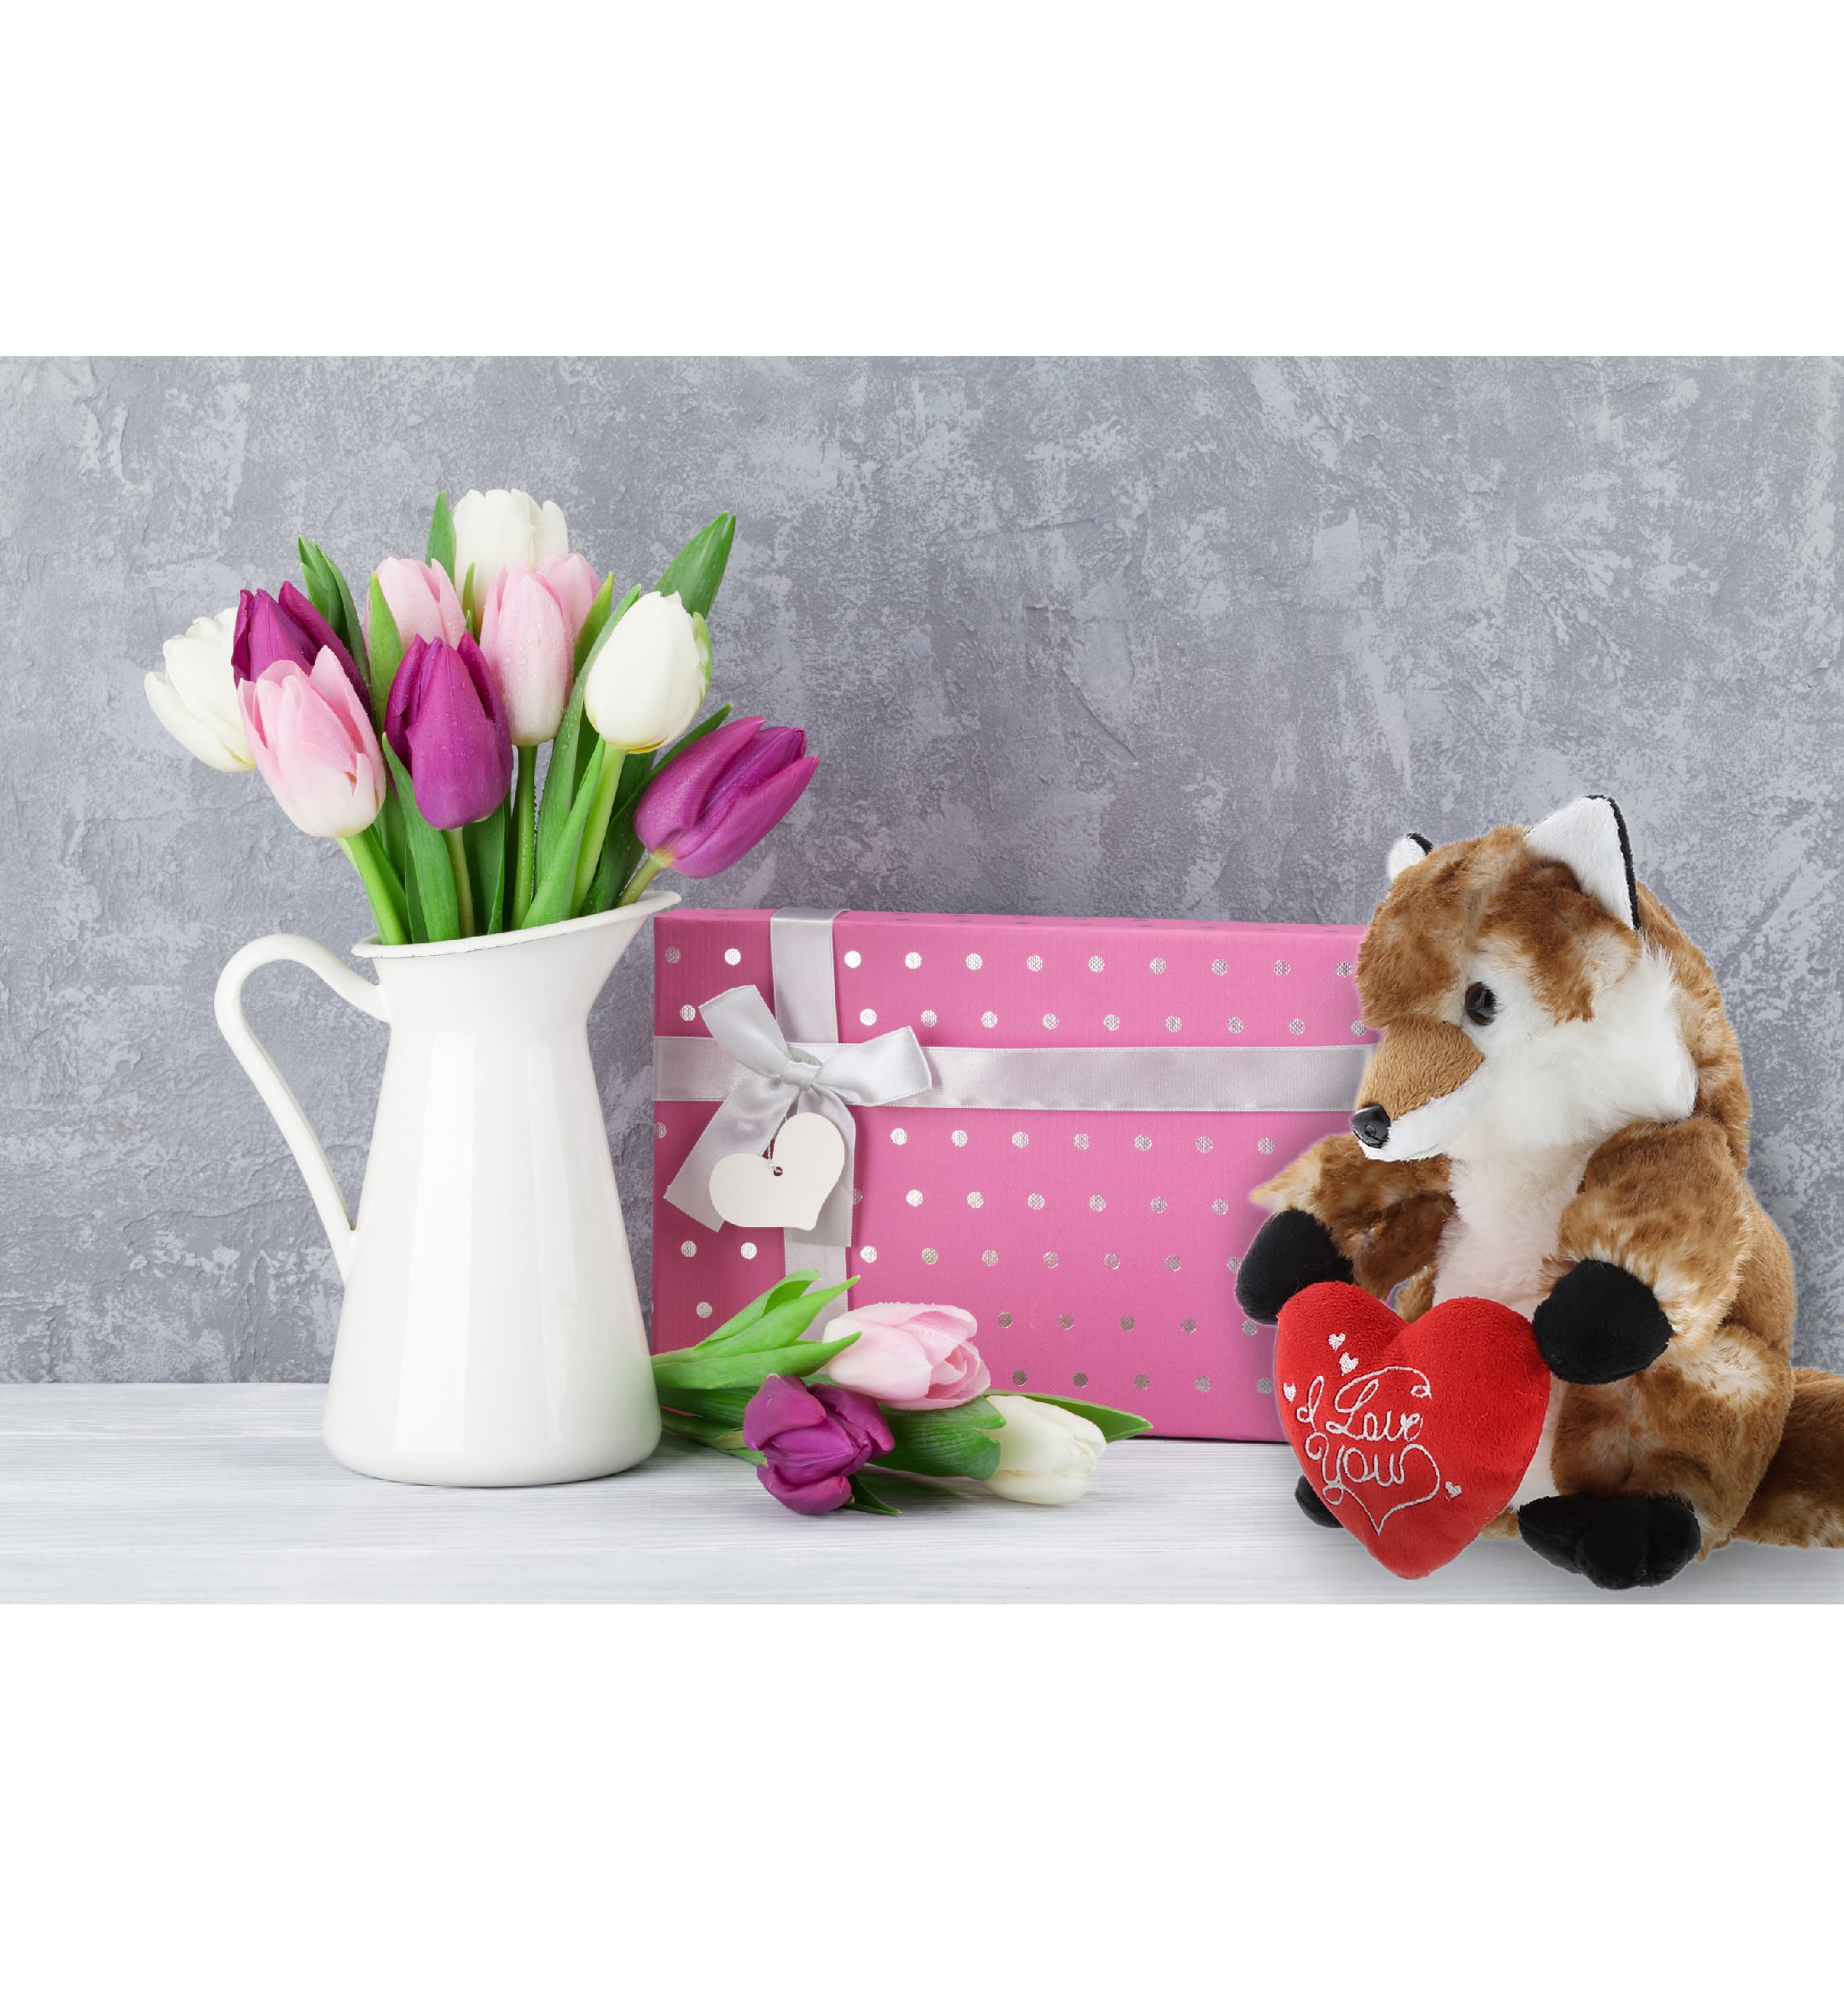 Fox Gifts for Women Lovely Animals Socks Gift for Fox Lover Valentine's Birthdays Gift for Her